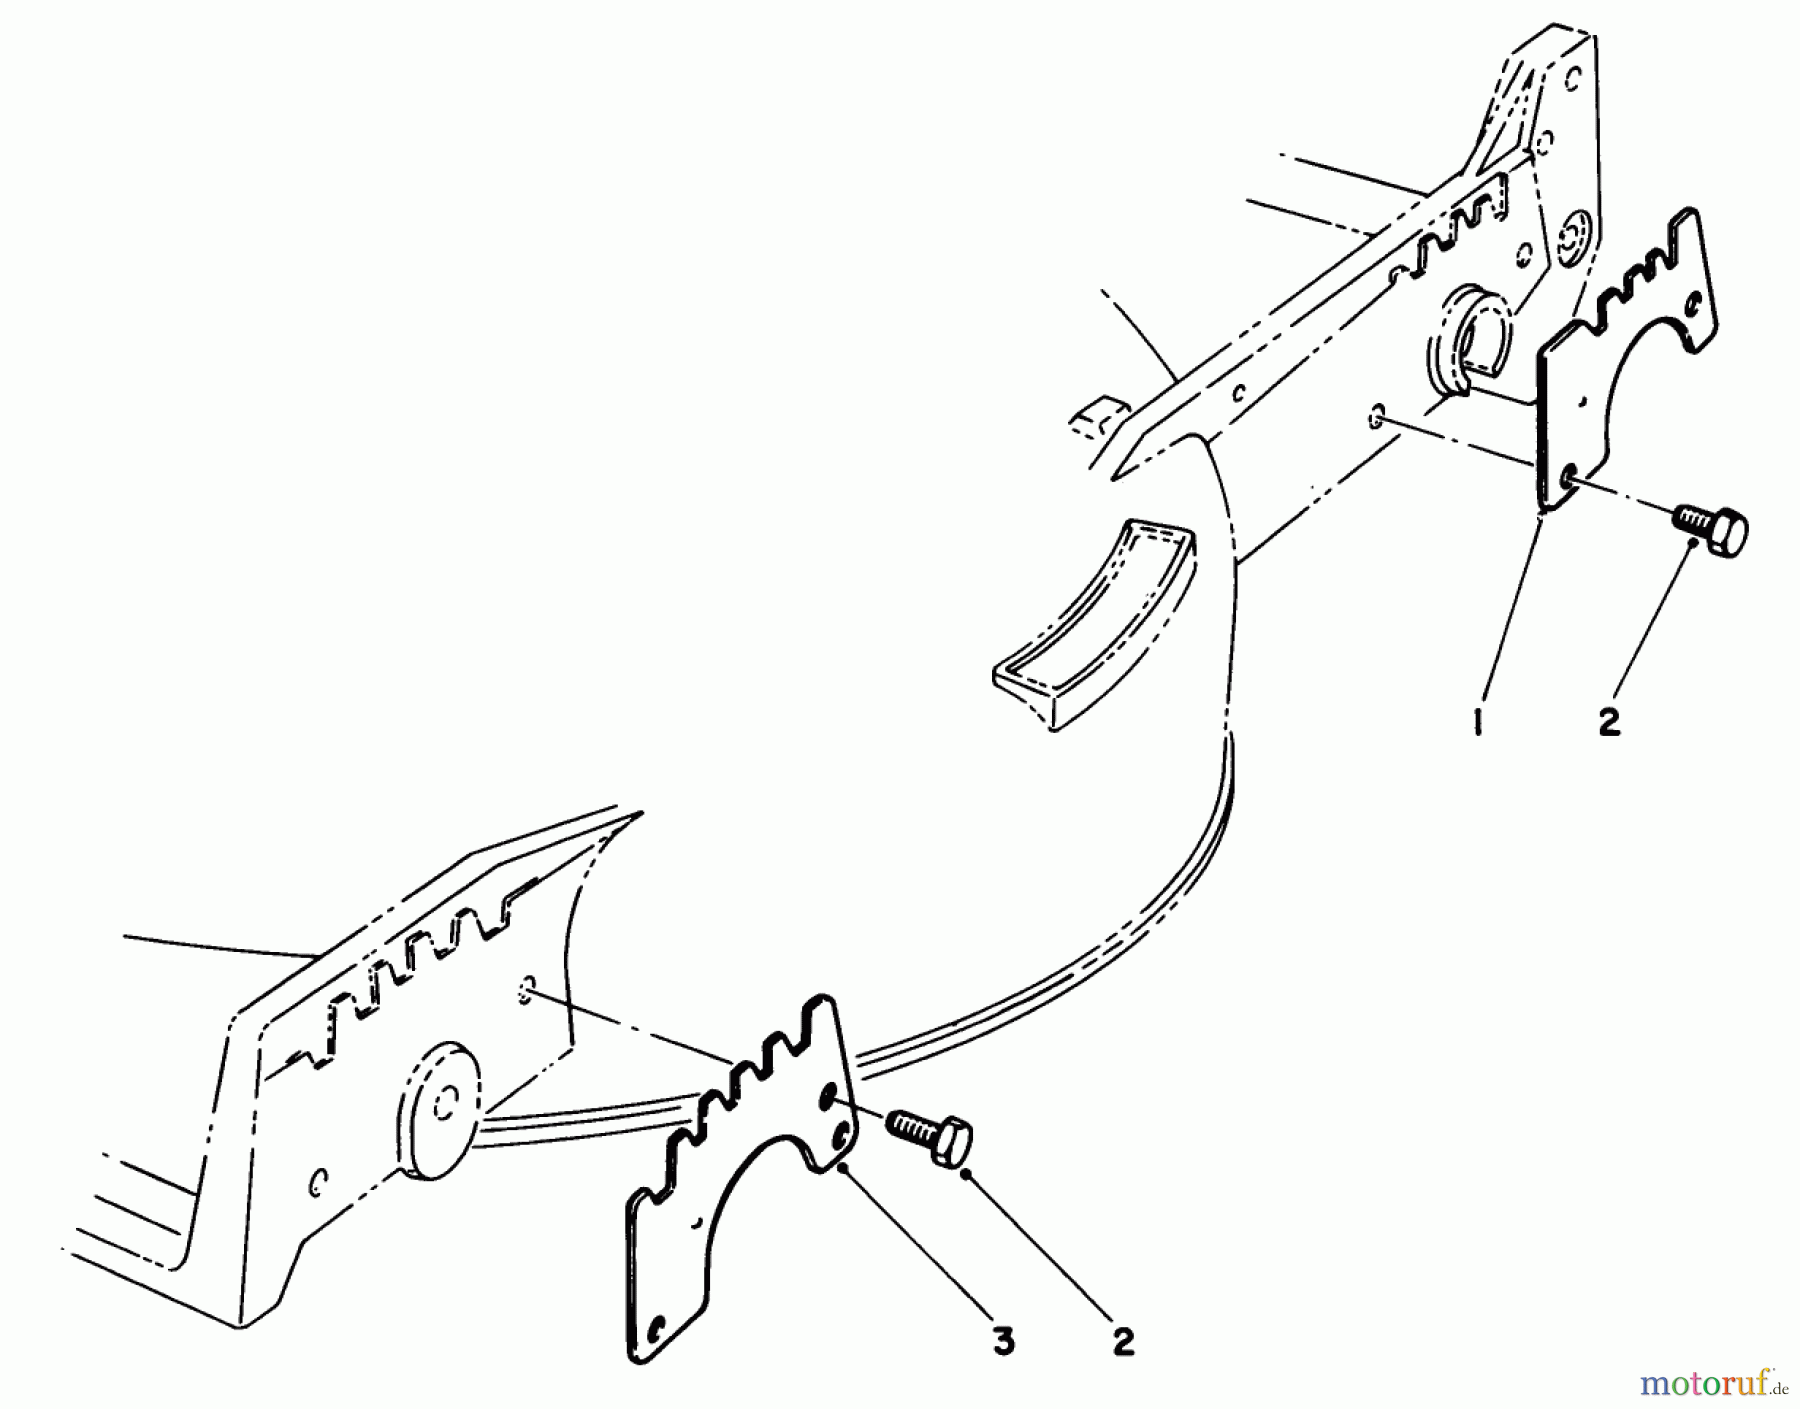  Toro Neu Mowers, Walk-Behind Seite 1 20624 - Toro Lawnmower, 1986 (6000001-6999999) WEAR PLATE KIT NO. 49-4080 (OPTIONAL)